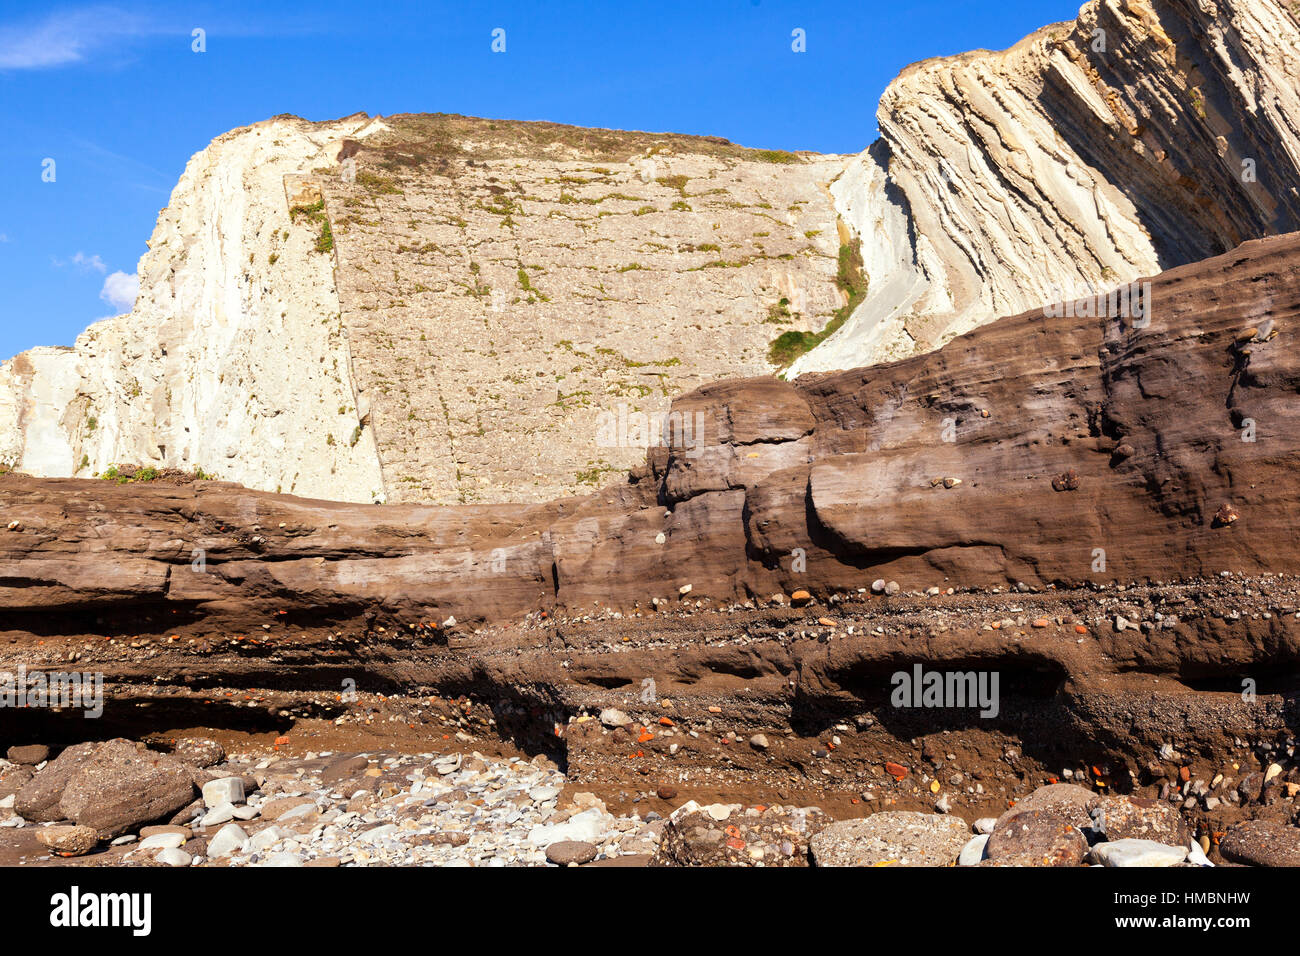 Tunelboca zementiert Strand von Biskay, Spanien. Sampleof das Anthropozän Alter, mit einer 7 m Schicht aus industriellen Ablagerungen an der Küste Stockfoto